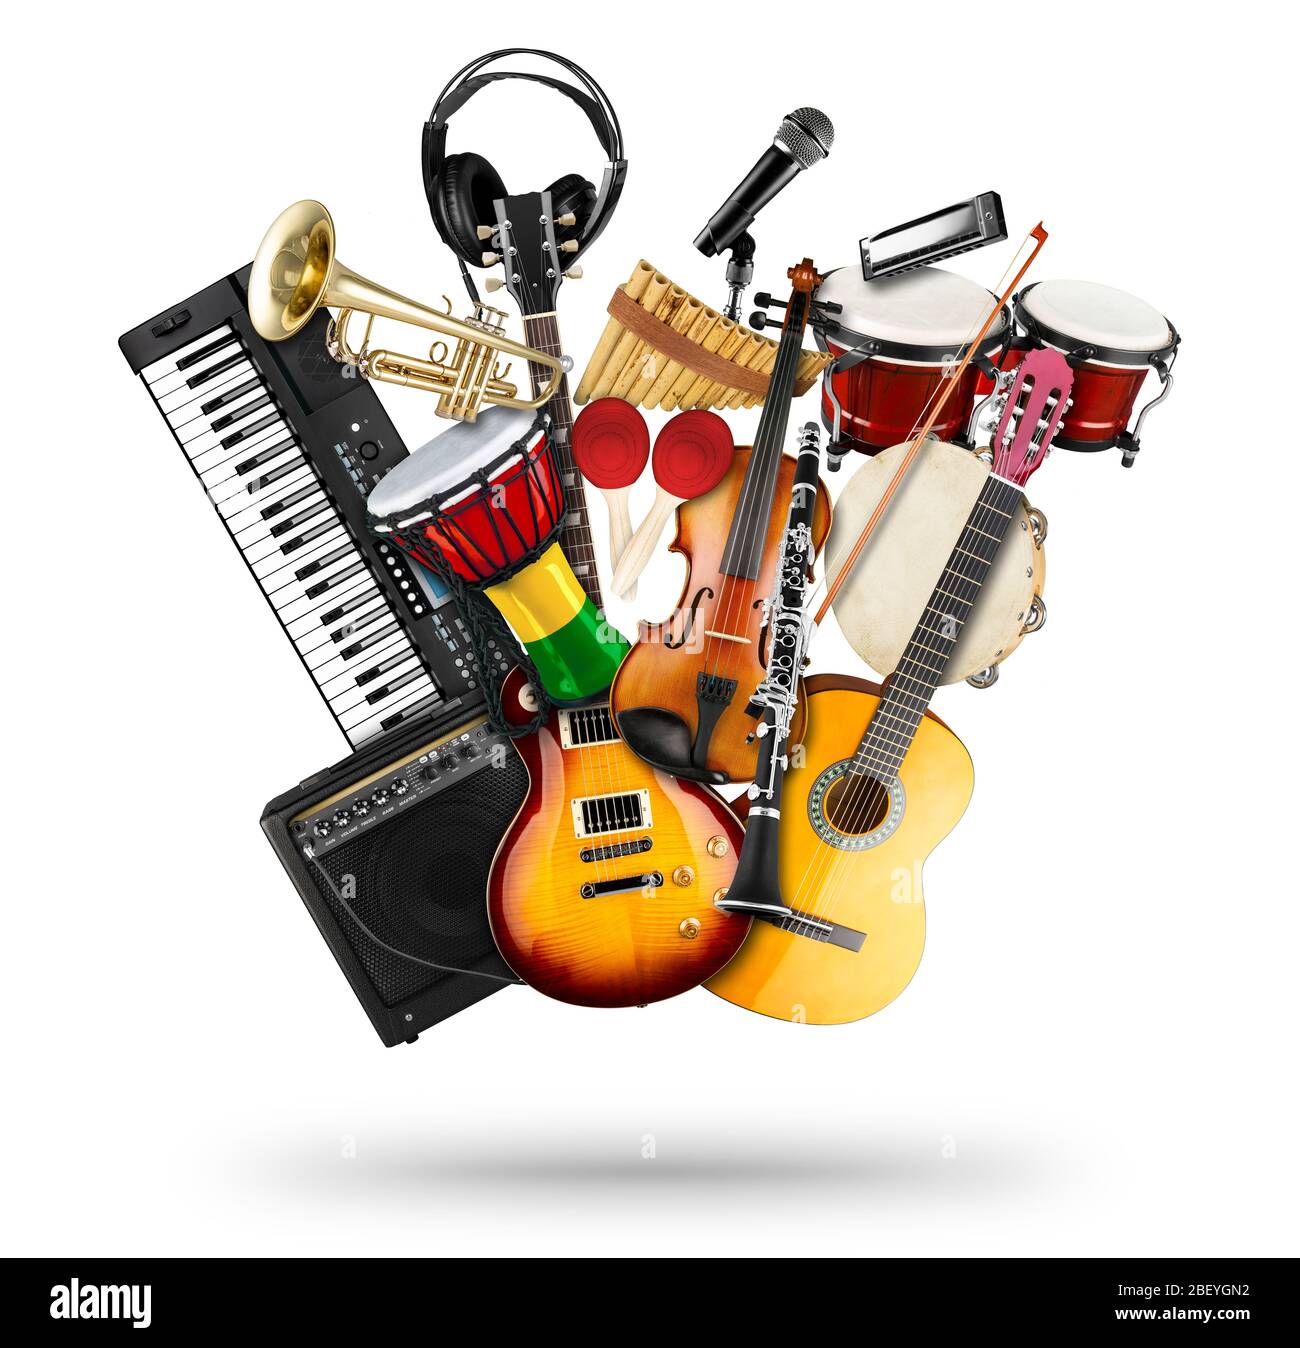 collage pile de divers instruments de musique. Guitare électrique violon clavier piano bongo batterie tamburin harmonica trompette. Goujon à percussion en laiton Banque D'Images